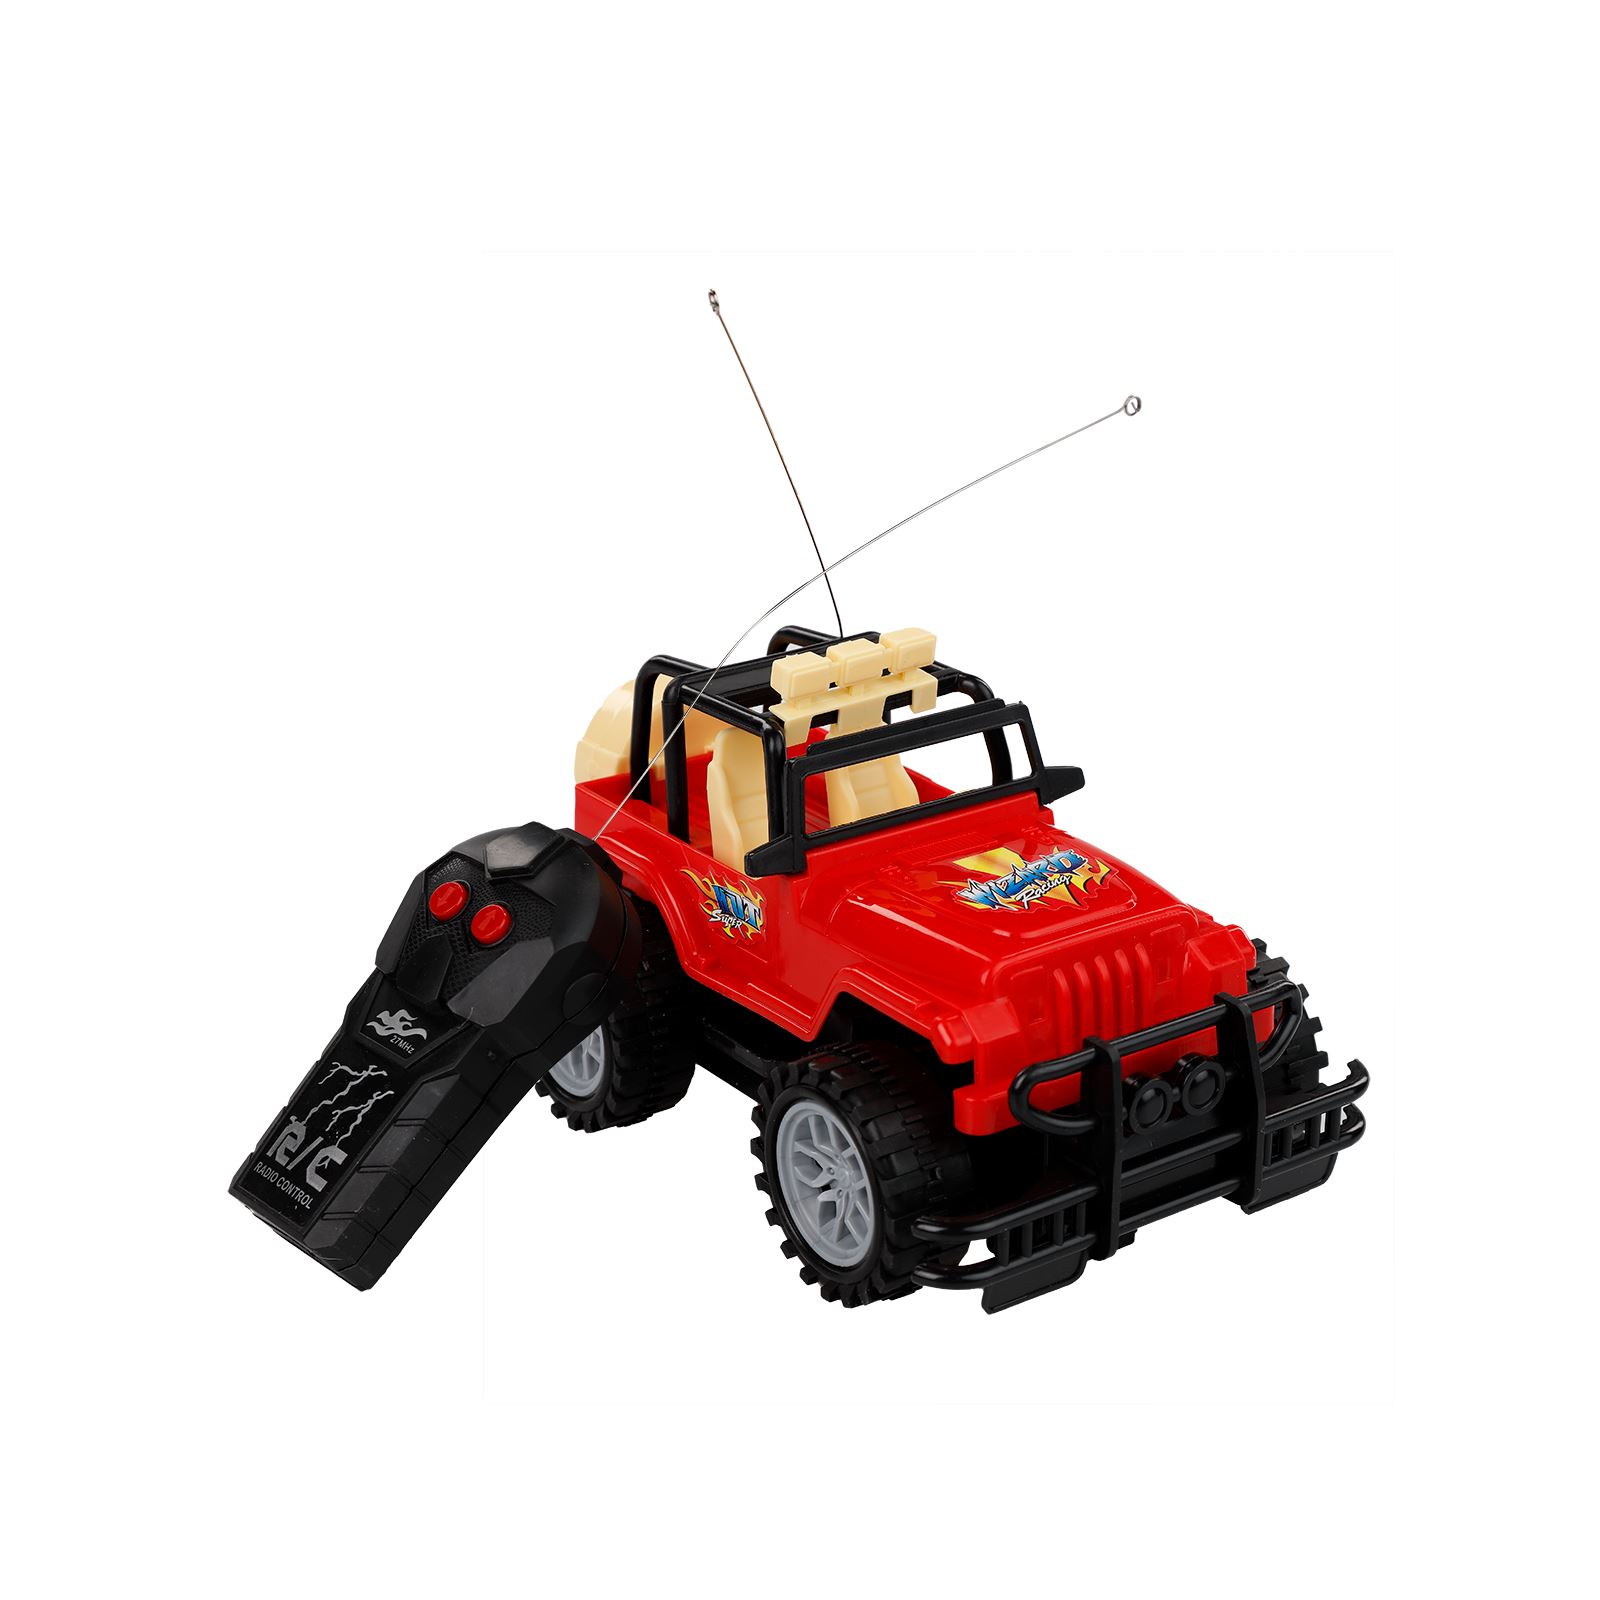 Prestij Oyuncak 2 Fonksiyonlu Safari Jeep Kırmızı